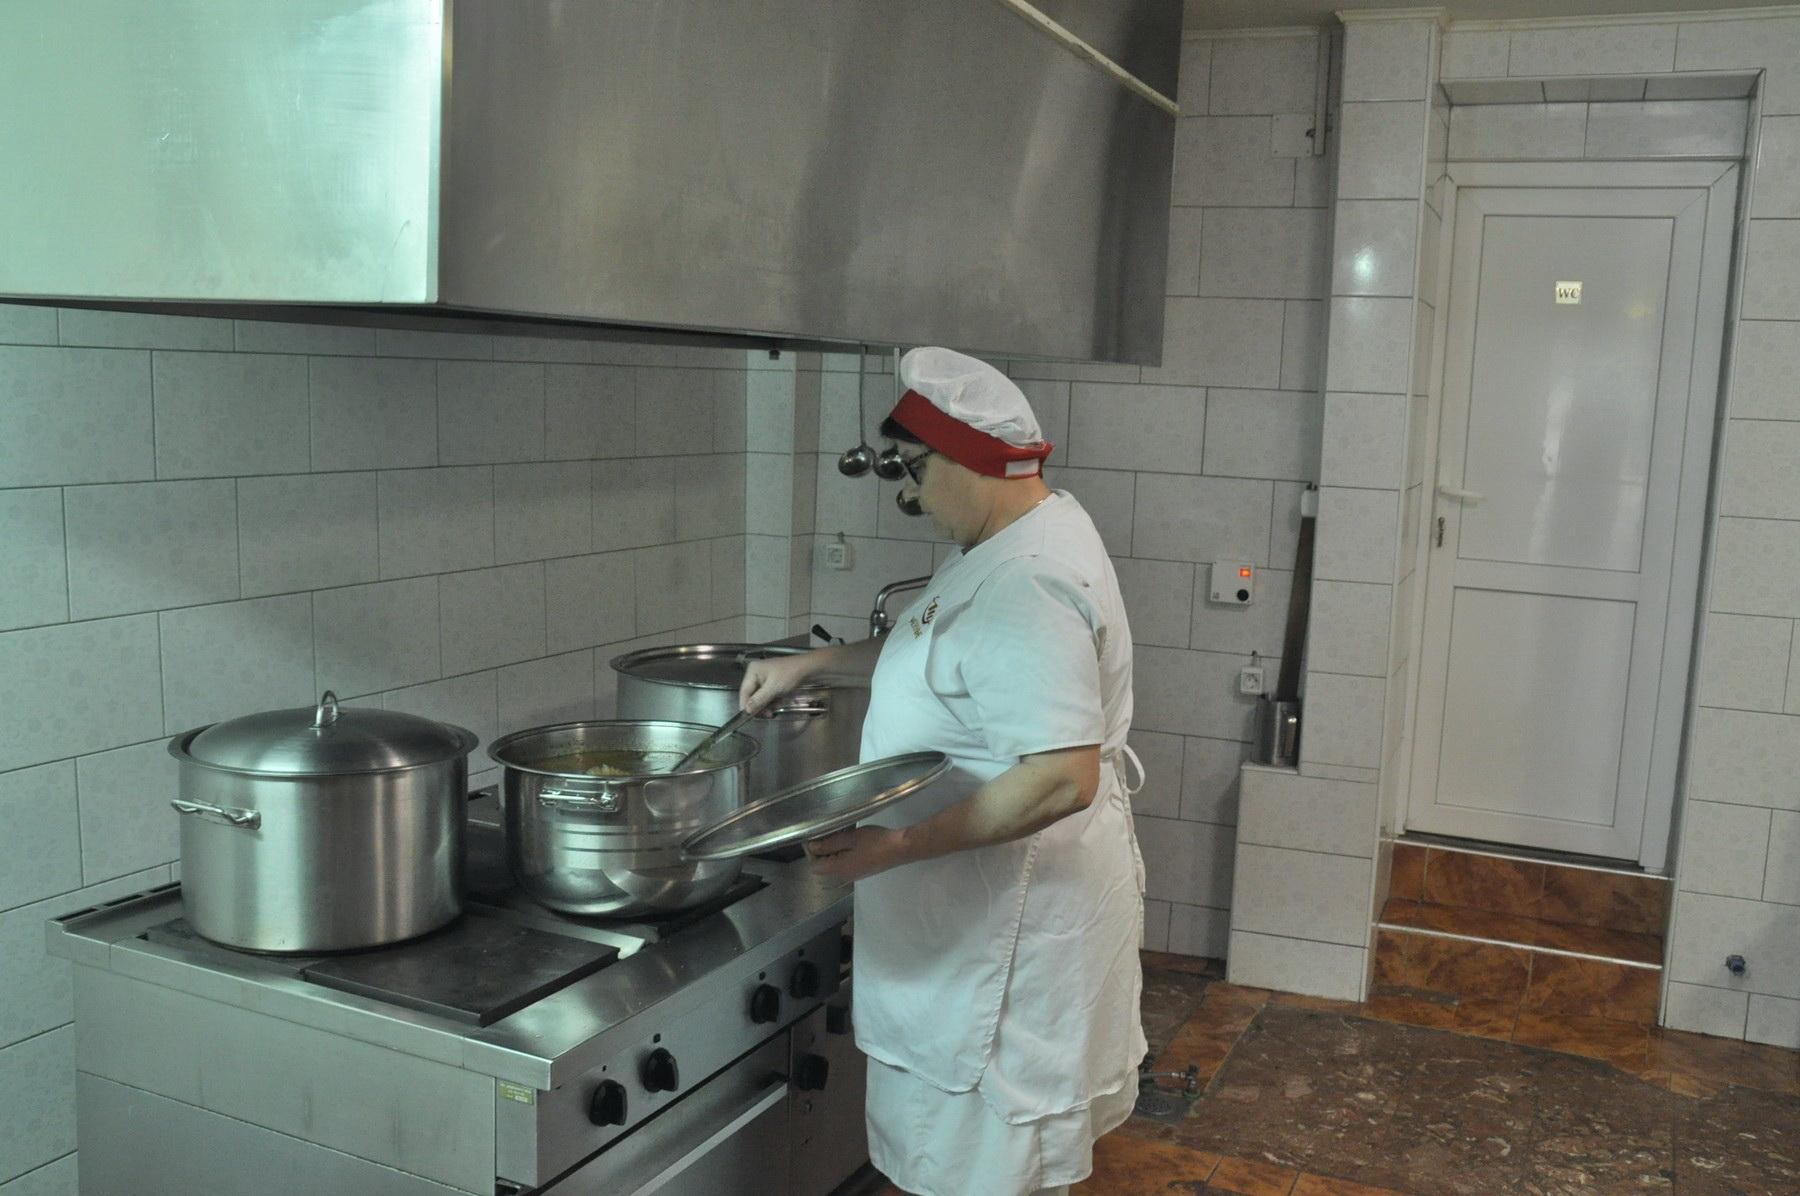 Javna kuhinja sve potrebnija u Bosanskom Novom: Korisnike bira Centar za socijalni rad